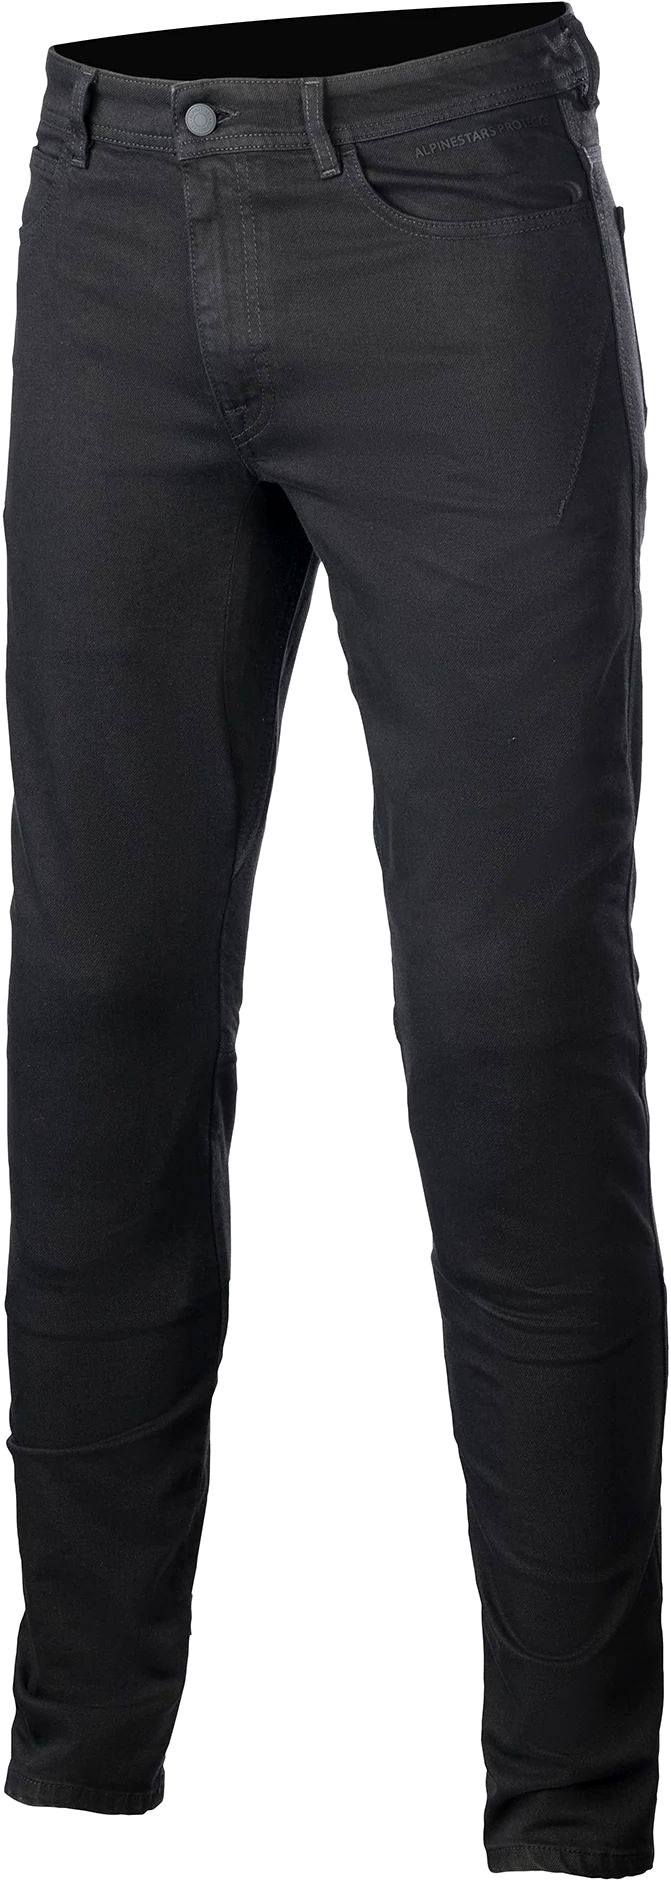 Alpinestars Argon, jeans - Noir - 32